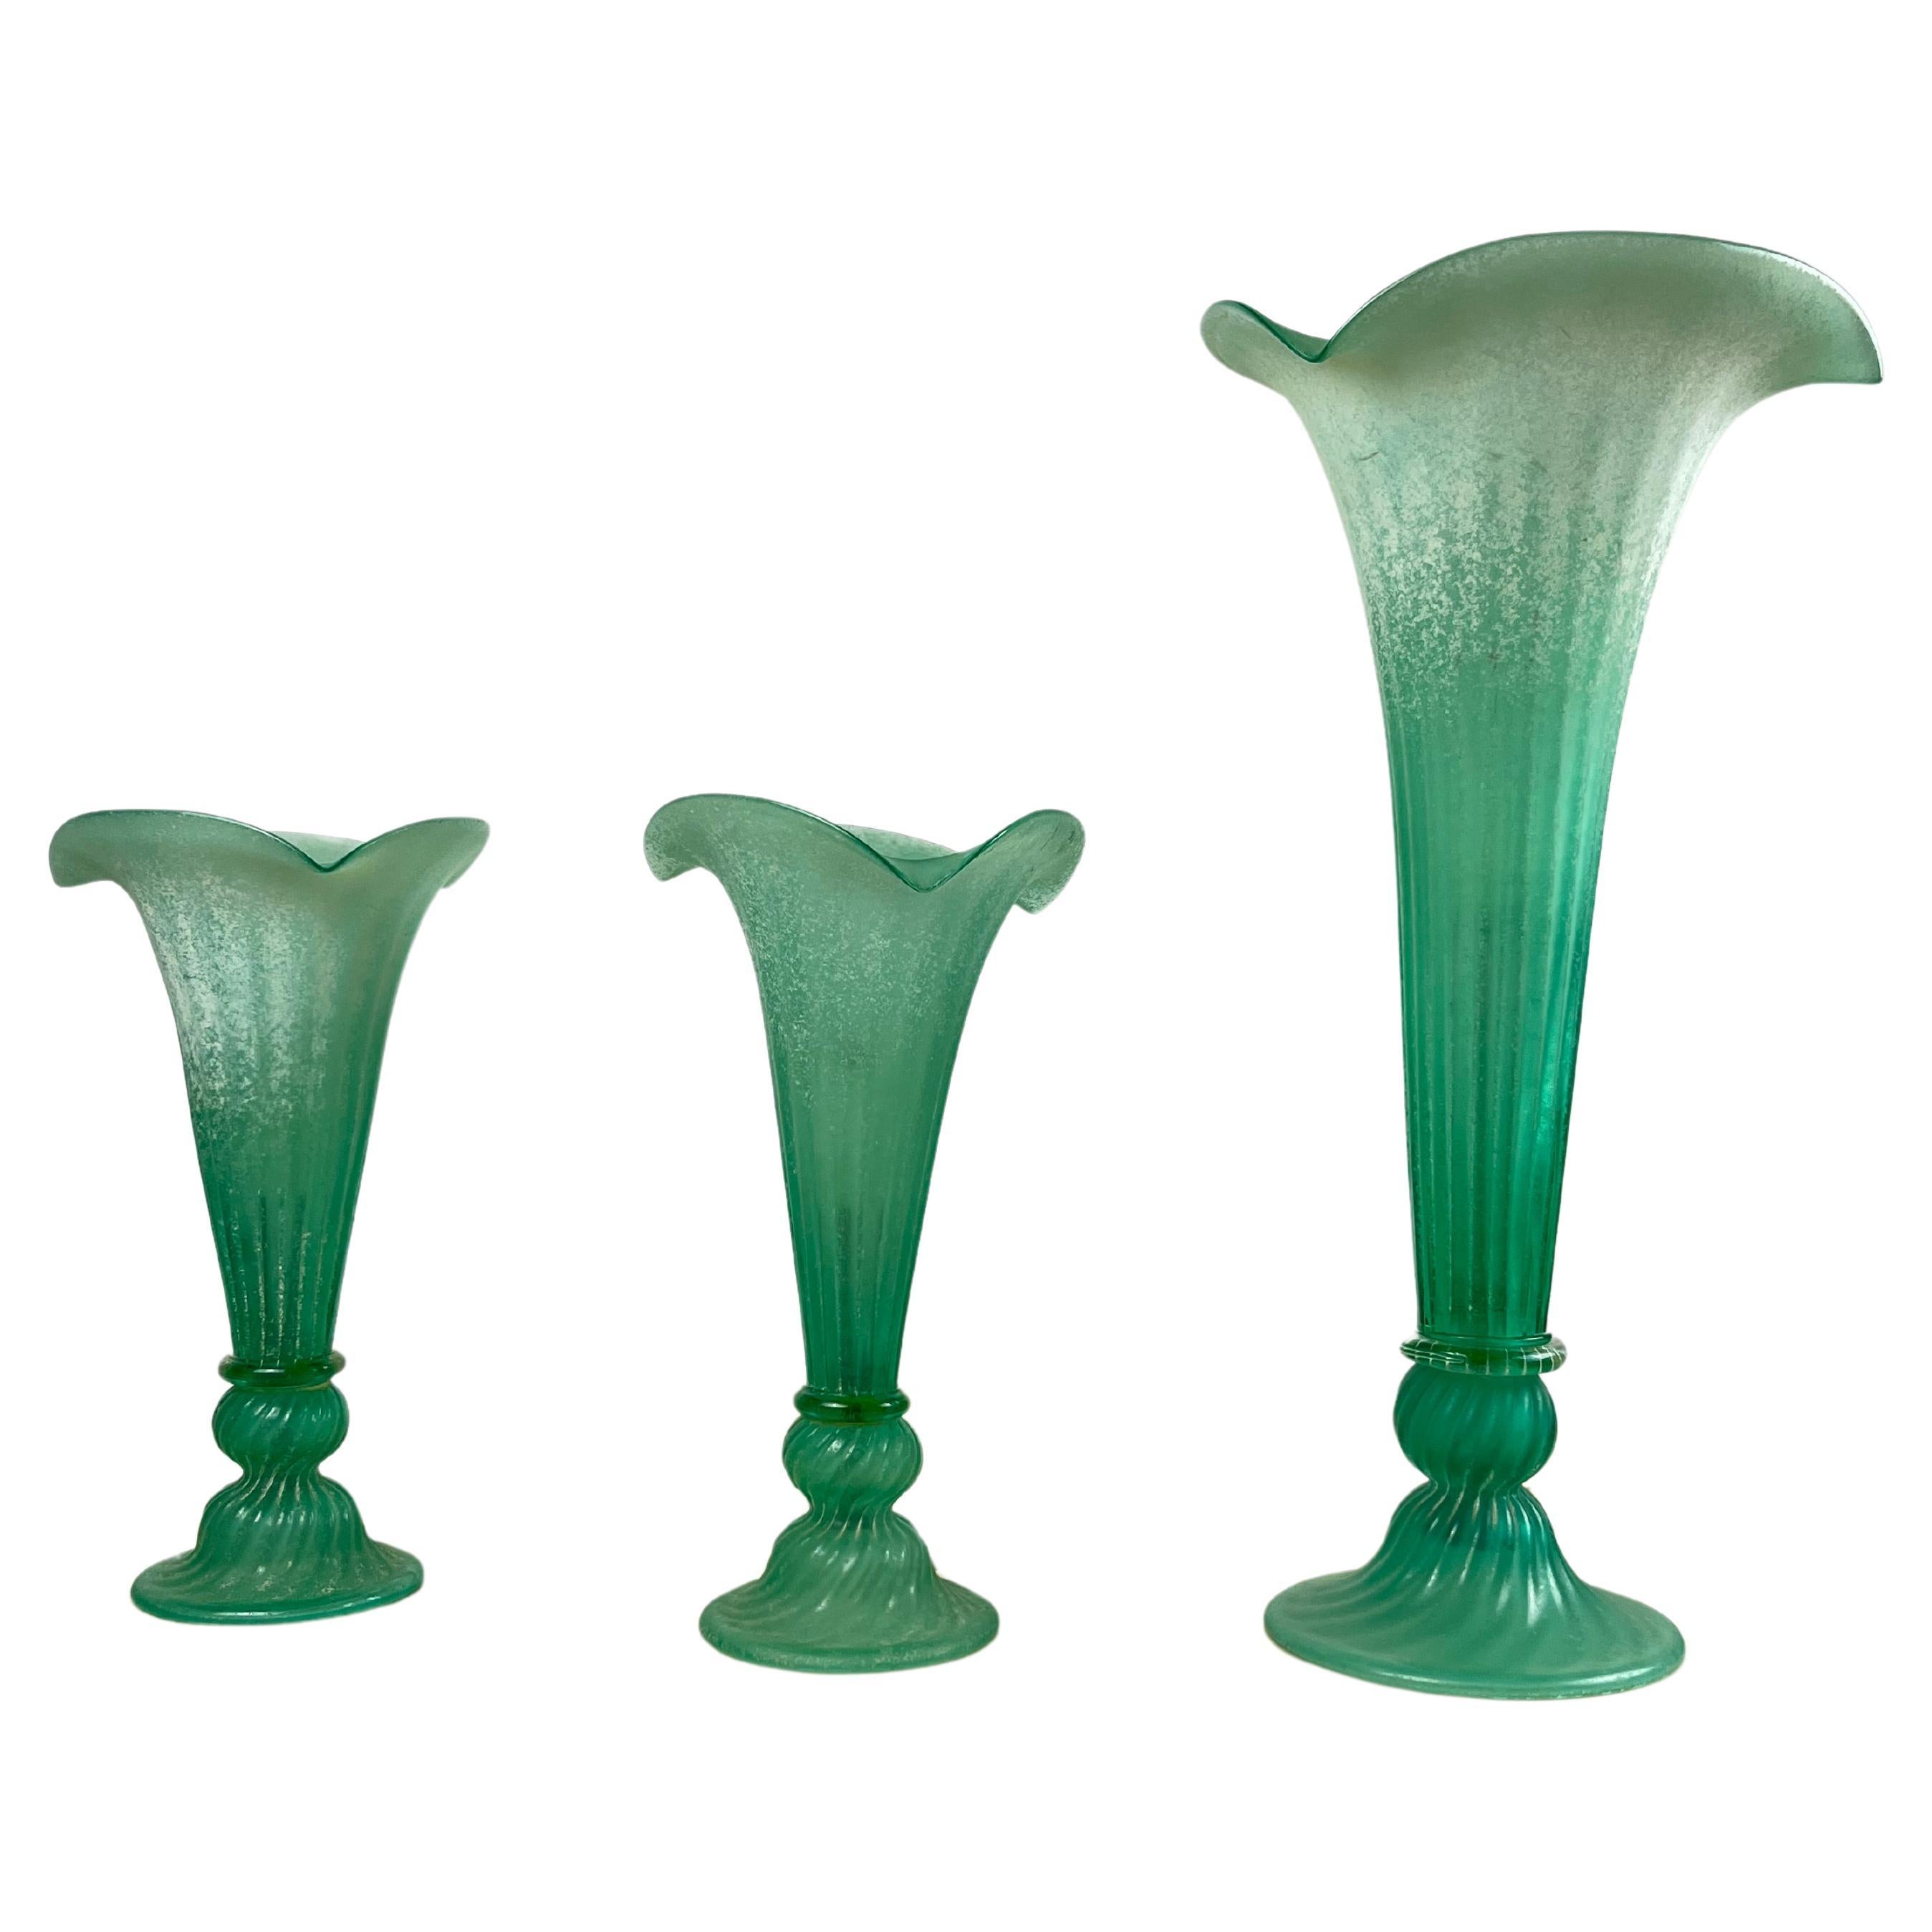 Ensemble de 3 lampes vertes en verre de Murano de conception italienne  1980s.